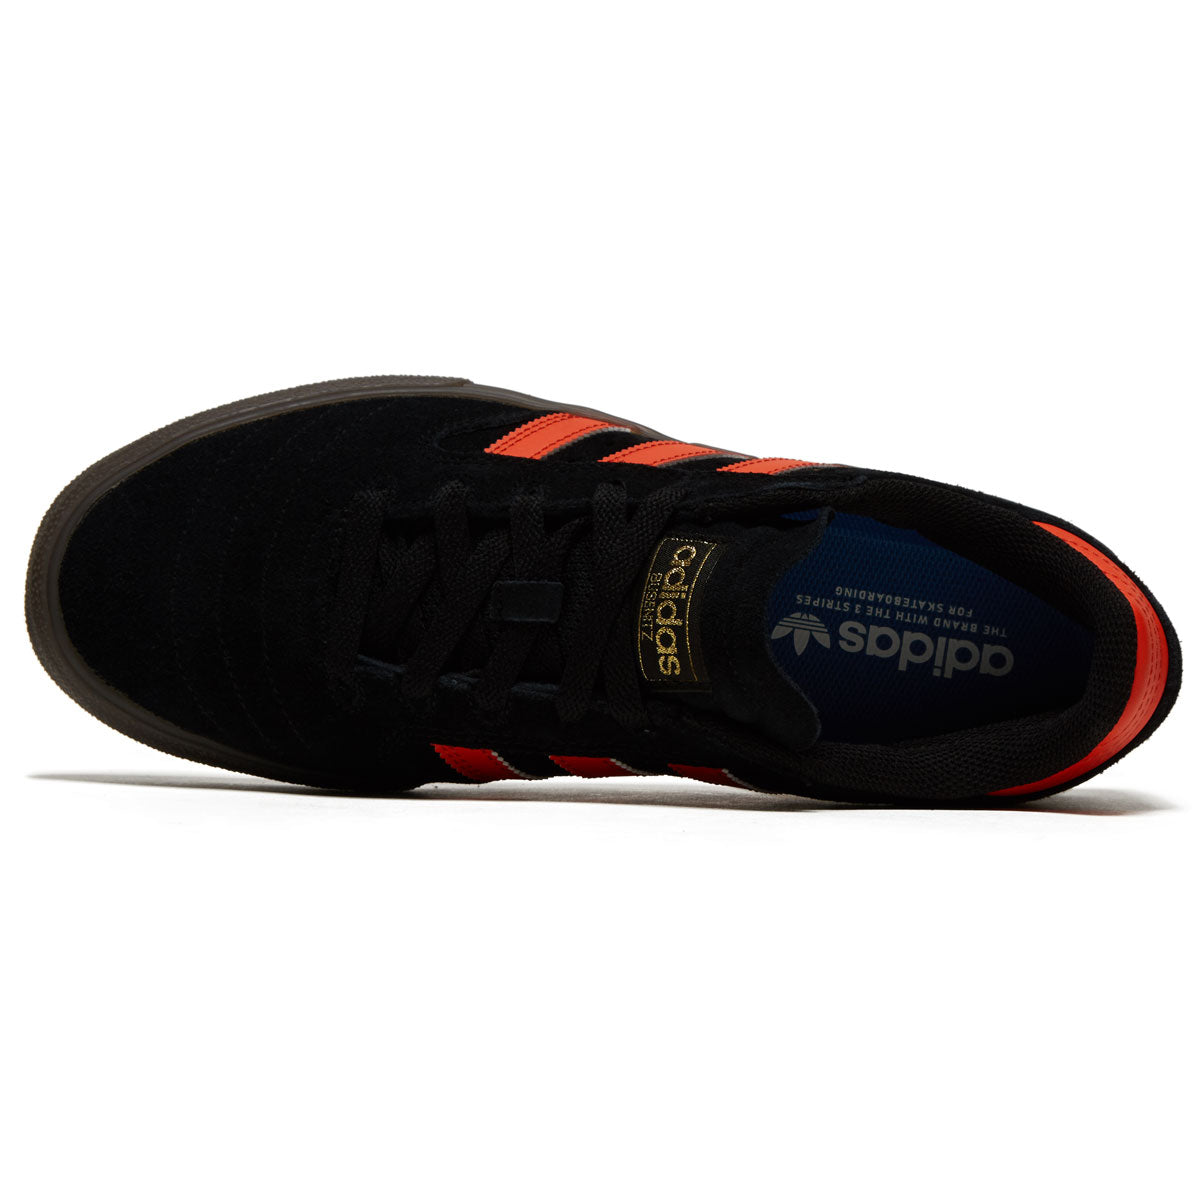 Adidas Busenitz Vulc II Shoes - Black/Collegiate Orange/Gum image 3